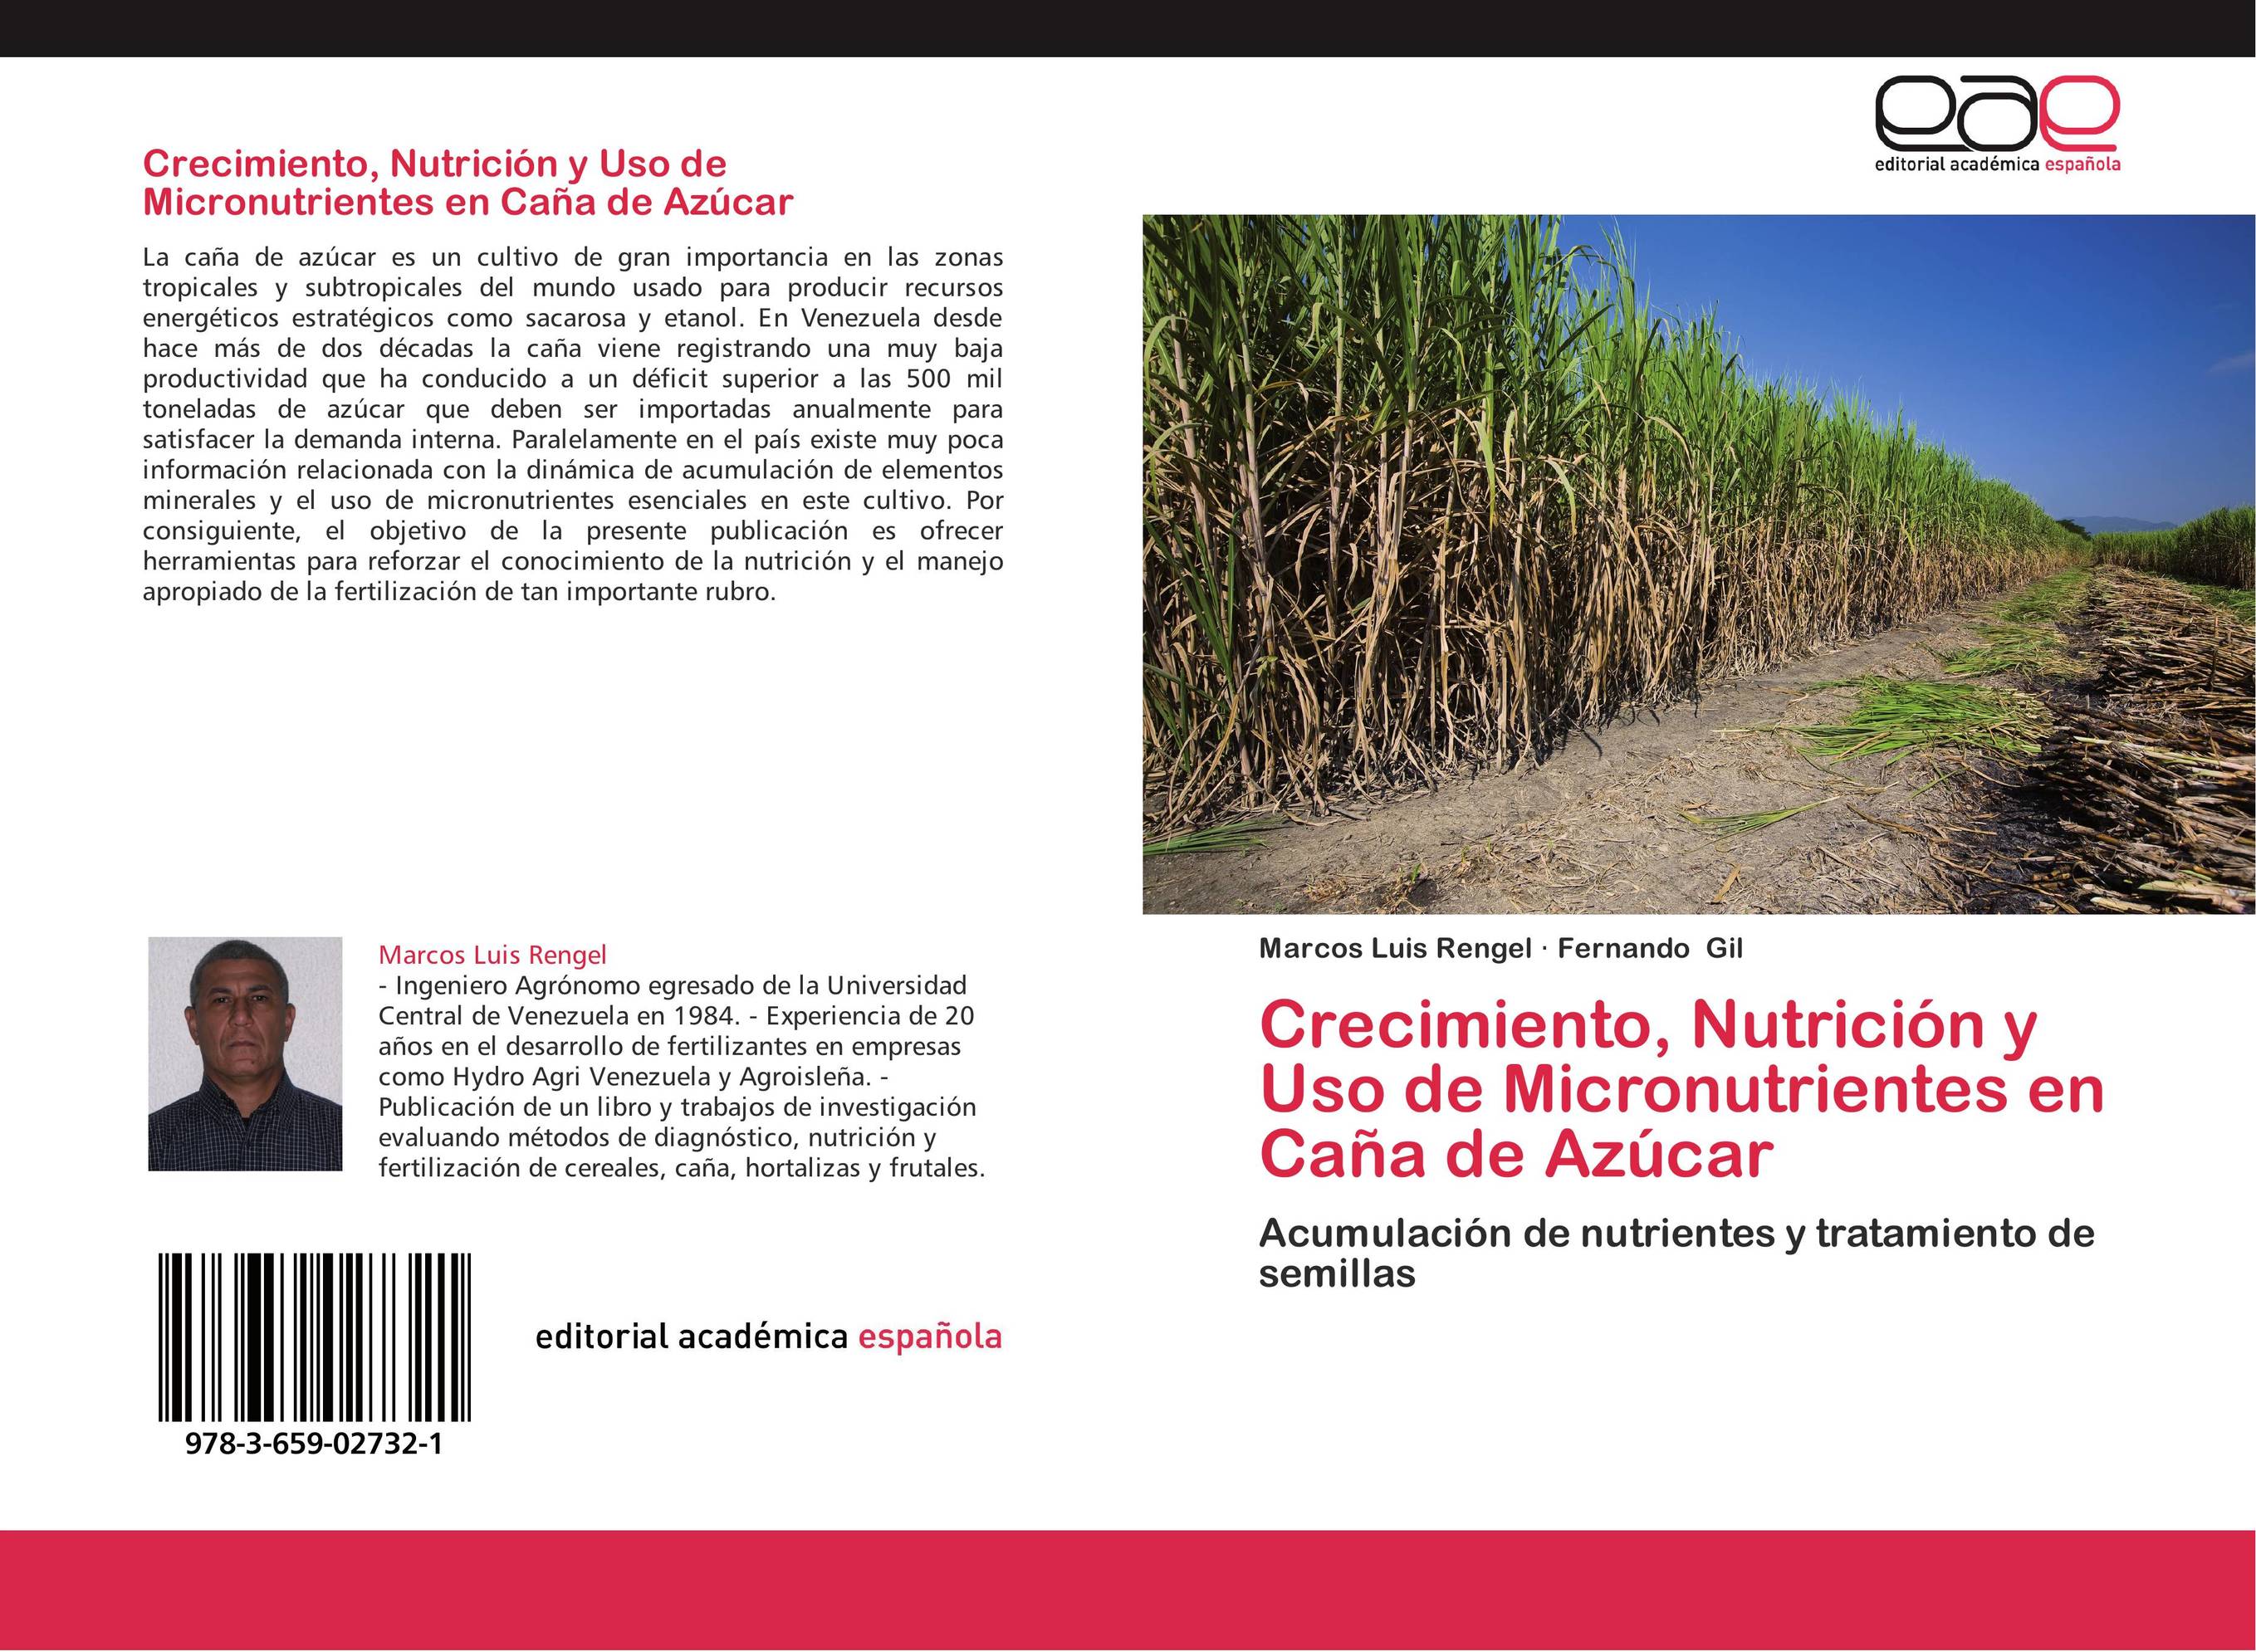 Crecimiento, Nutrición y Uso de Micronutrientes en Caña de Azúcar